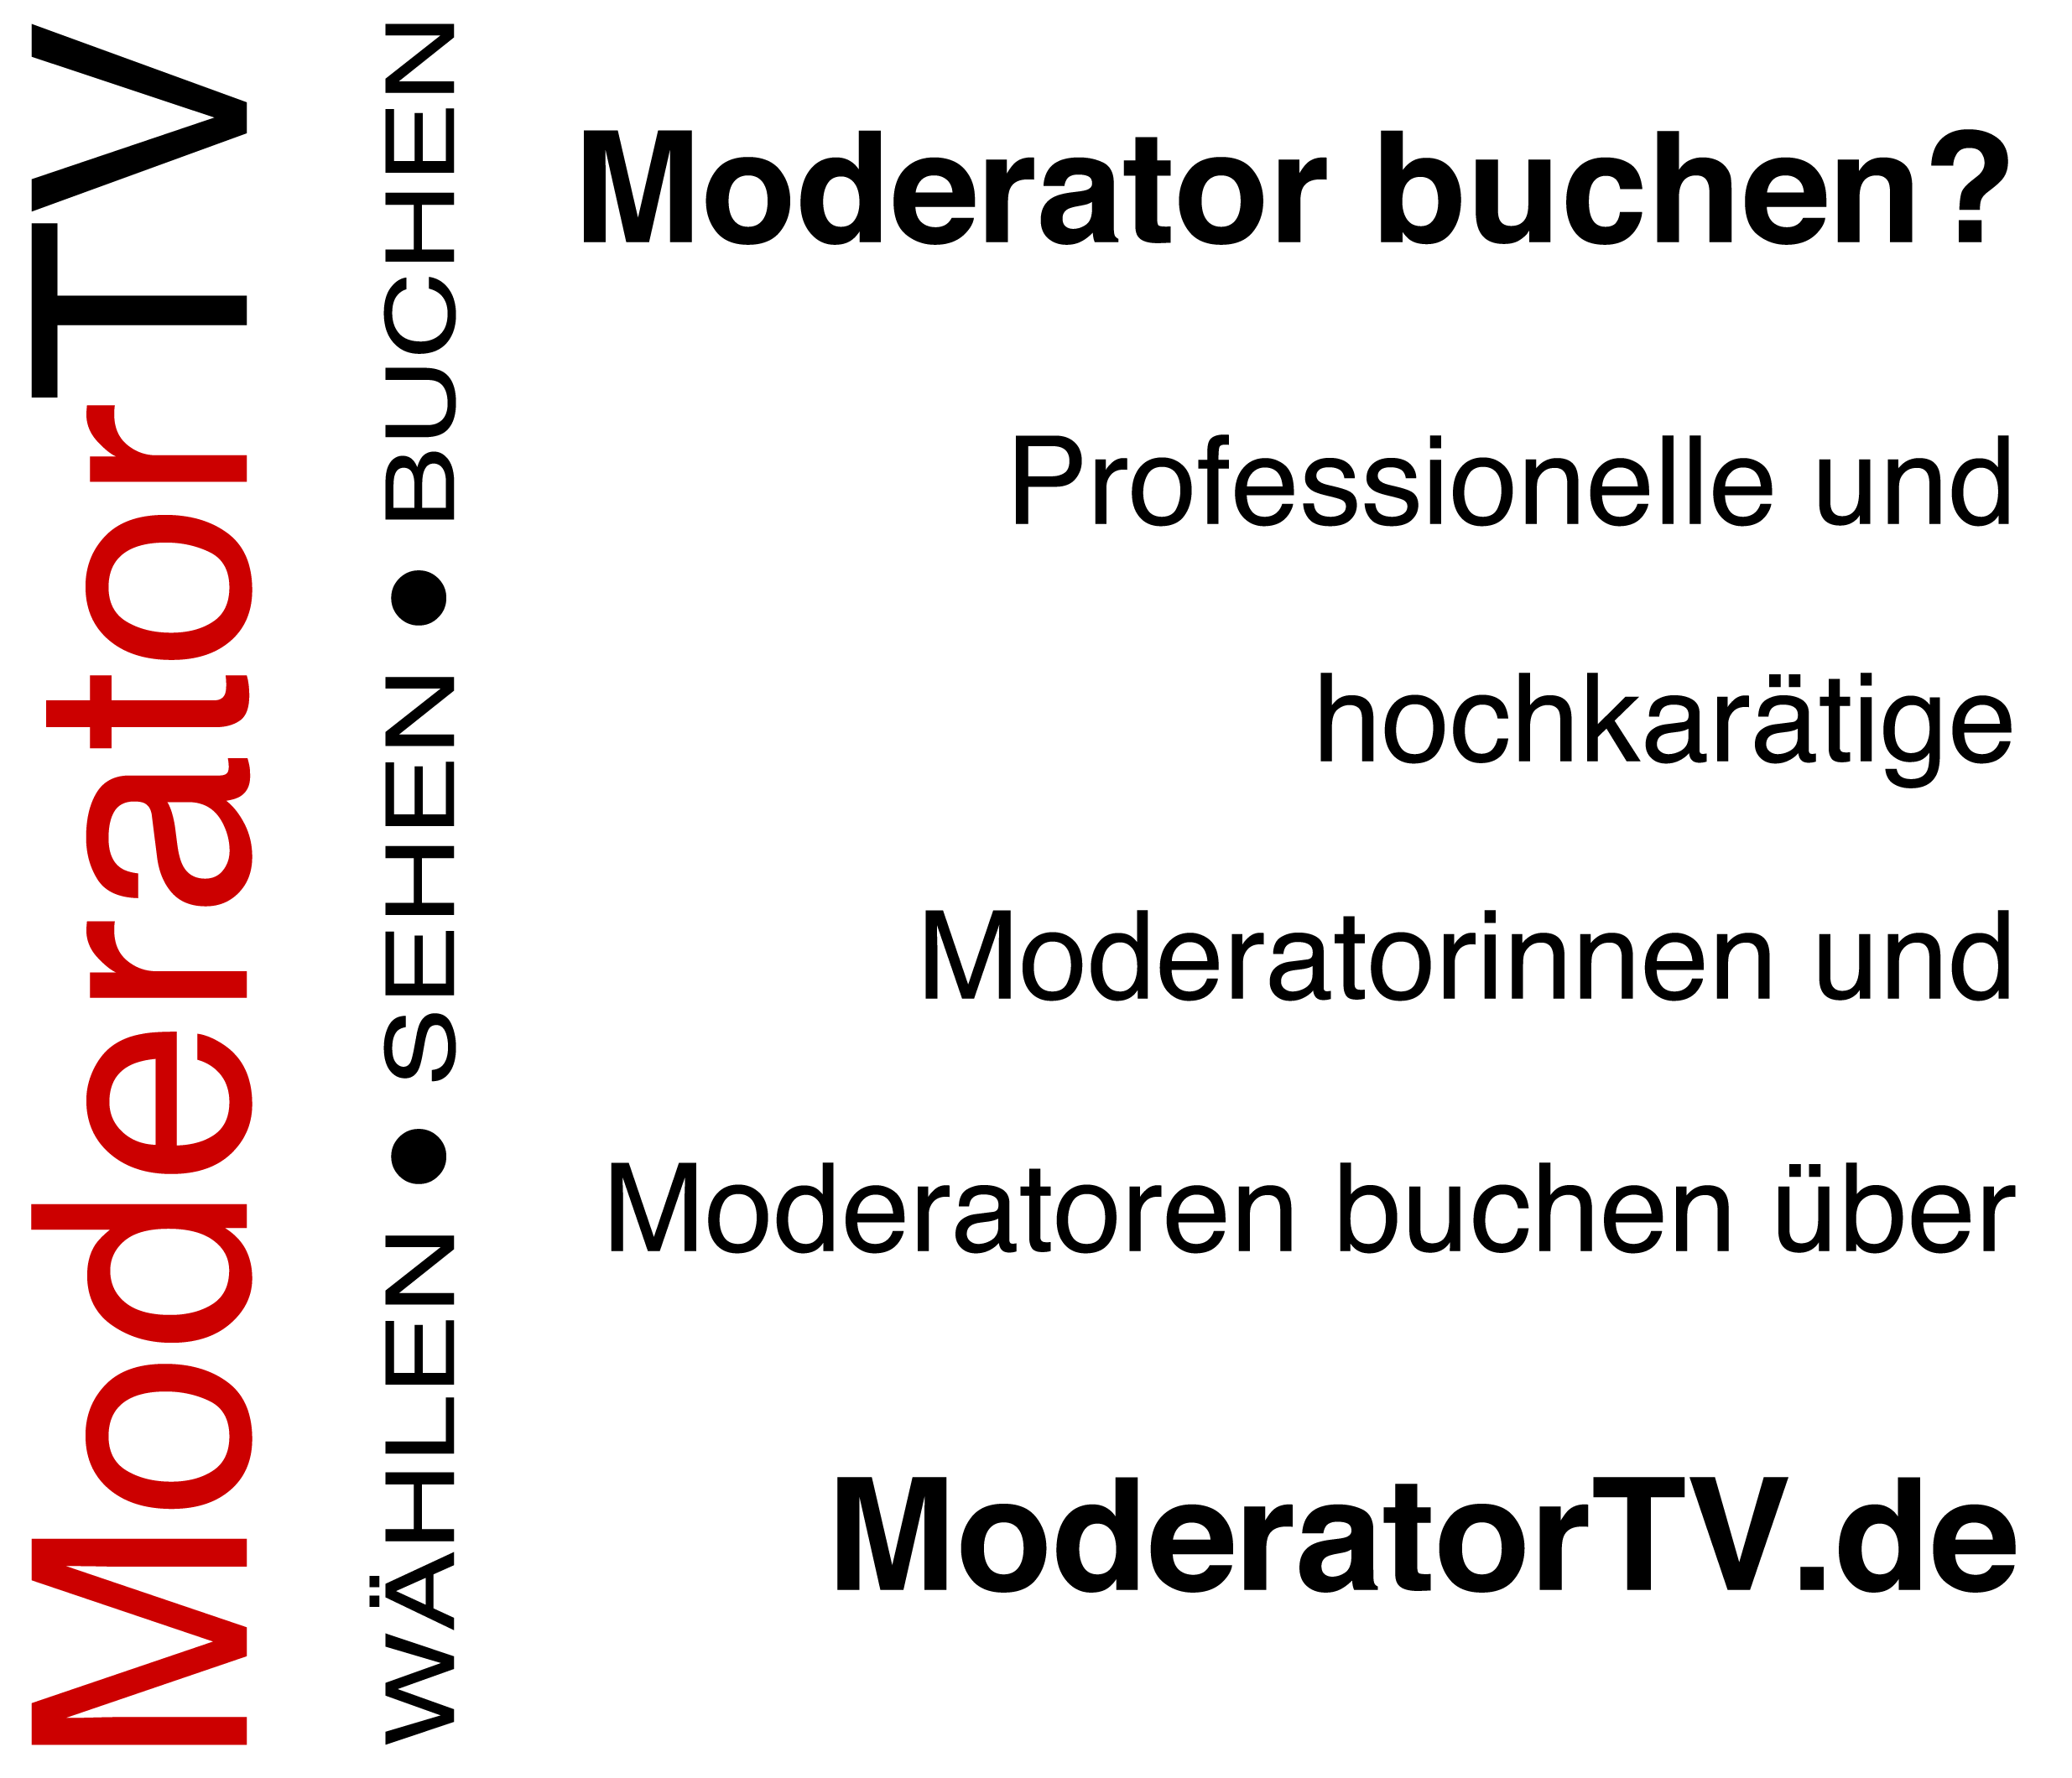 Moderator buchen